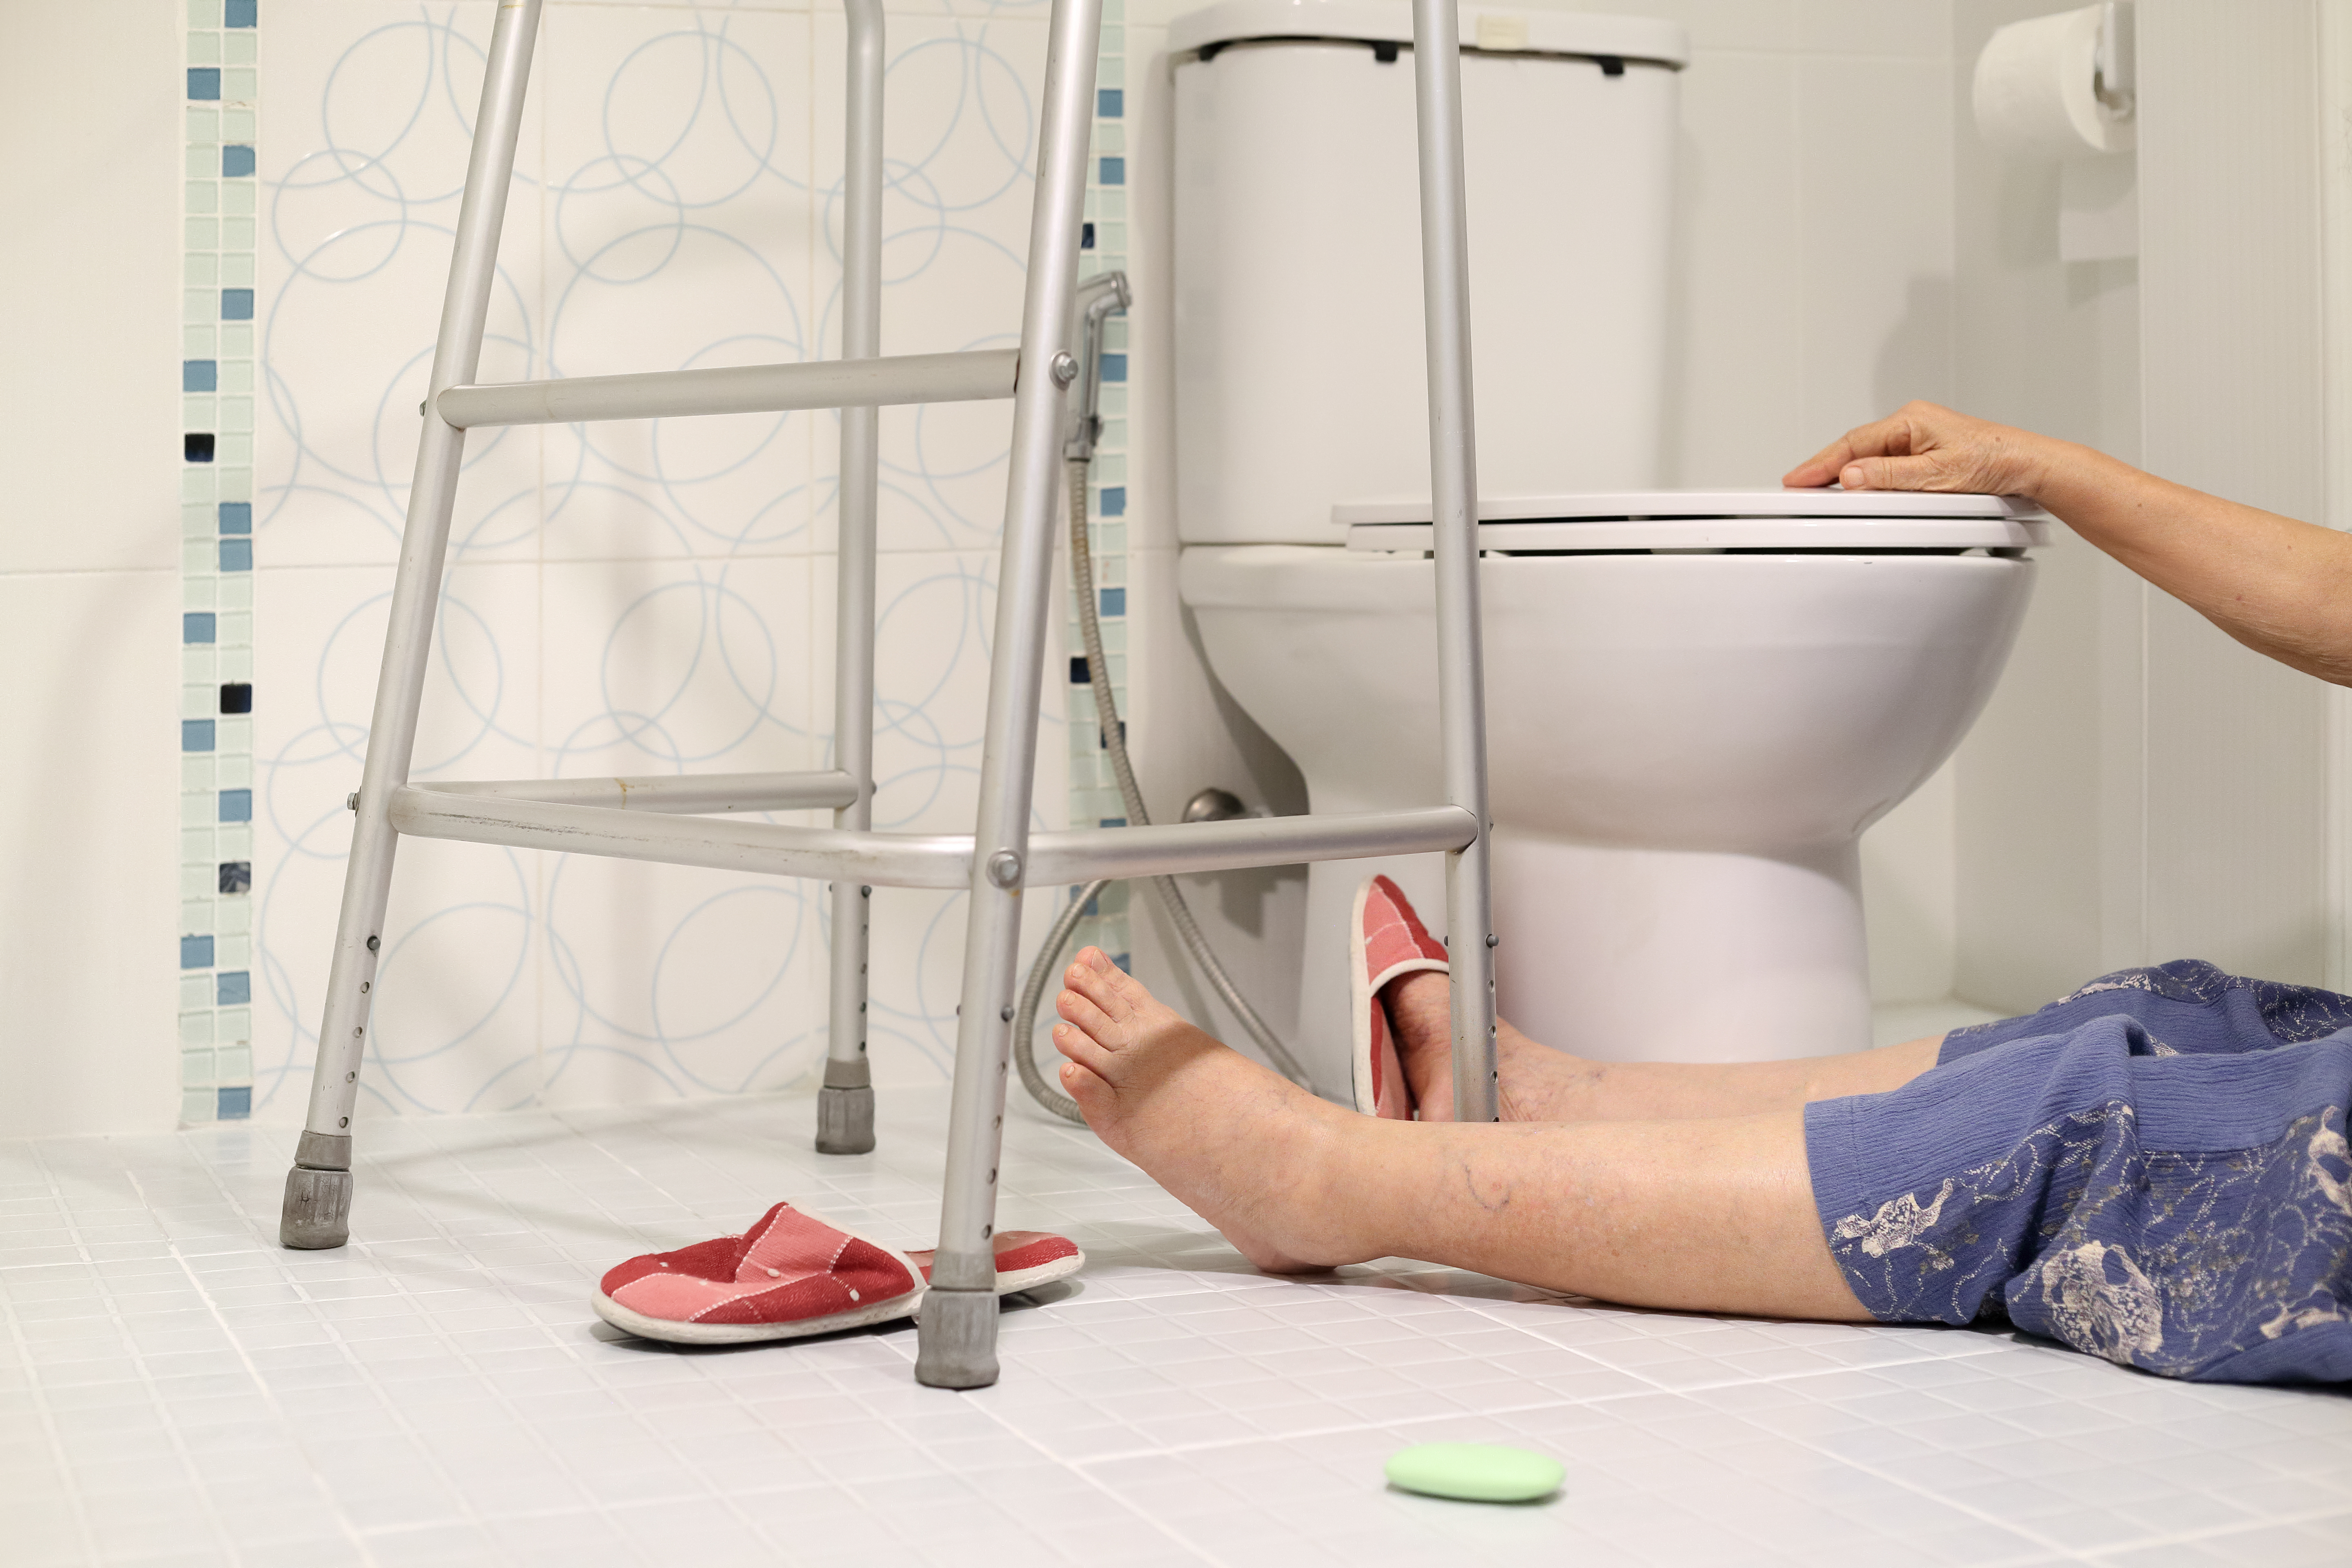 KIT alarma WC para personas con discapacidad o personas mayores